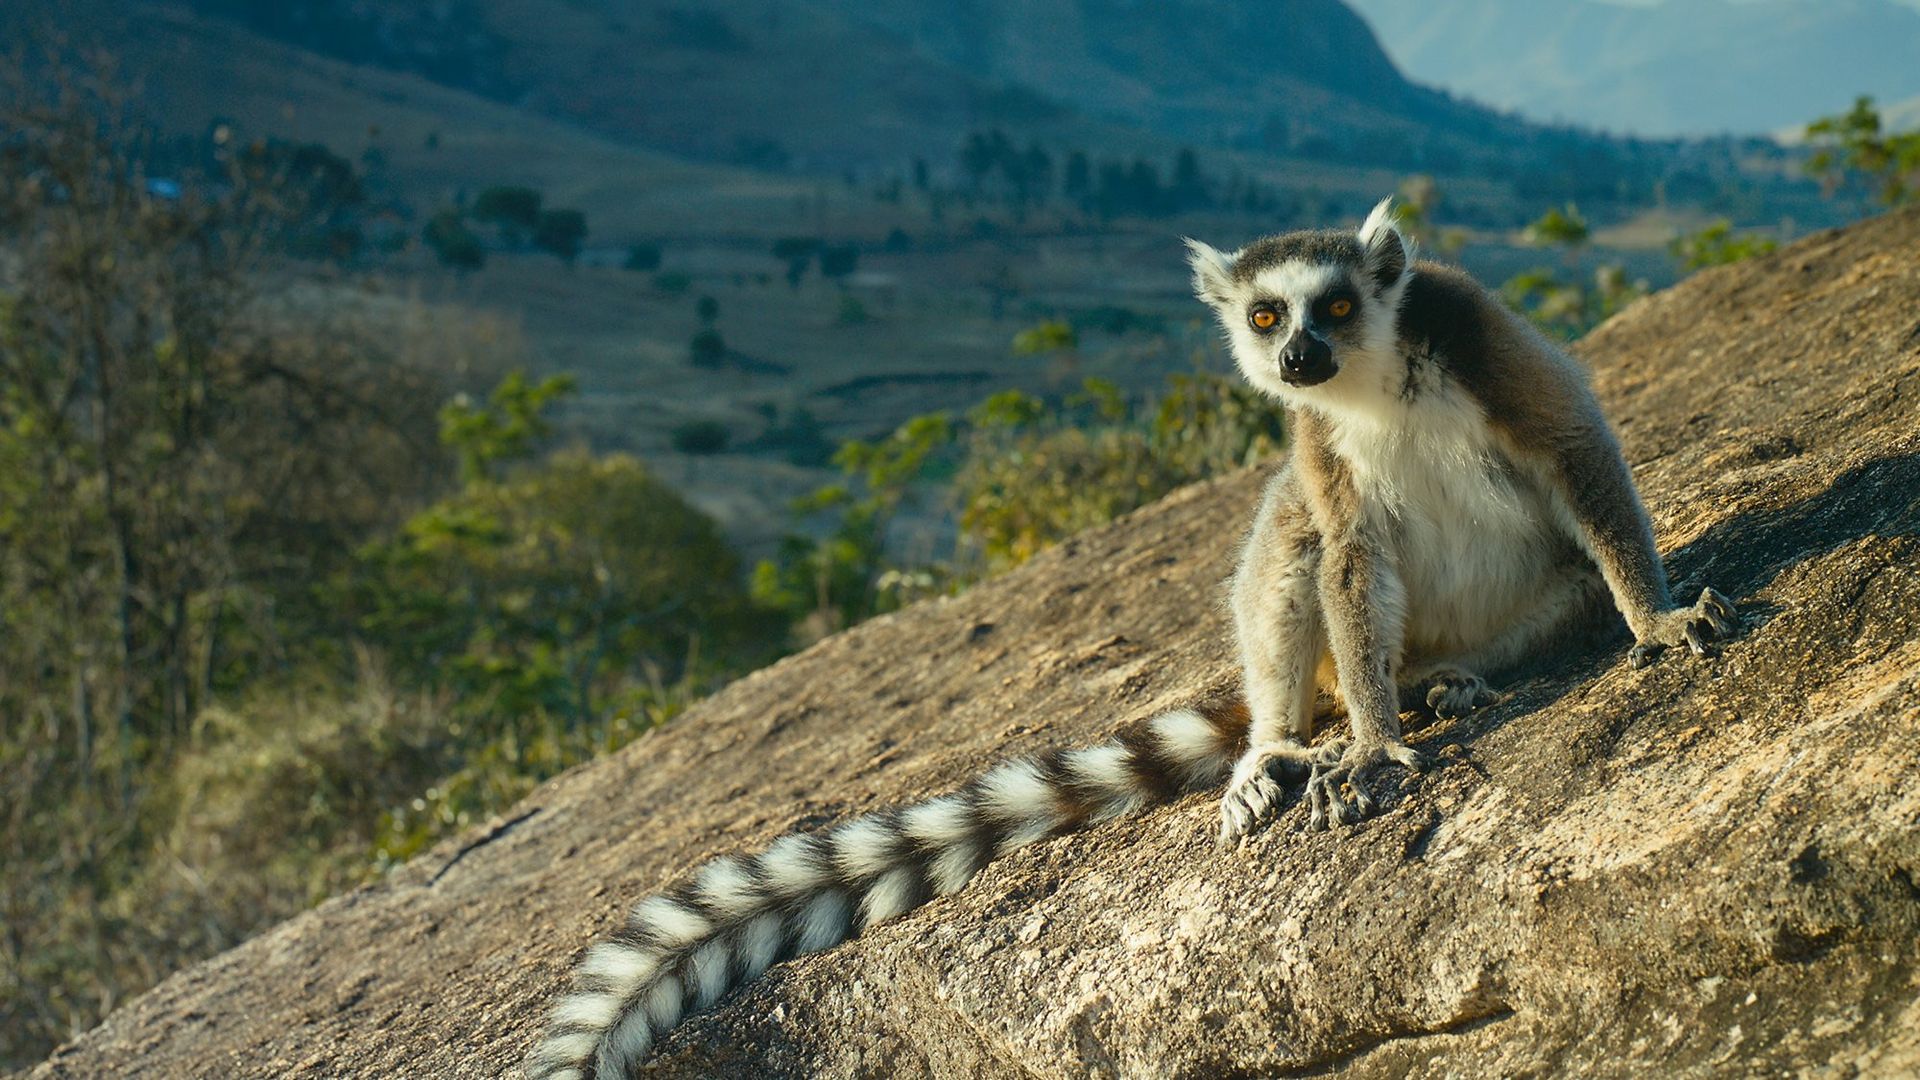 Island of Lemurs: Madagascar Backdrop